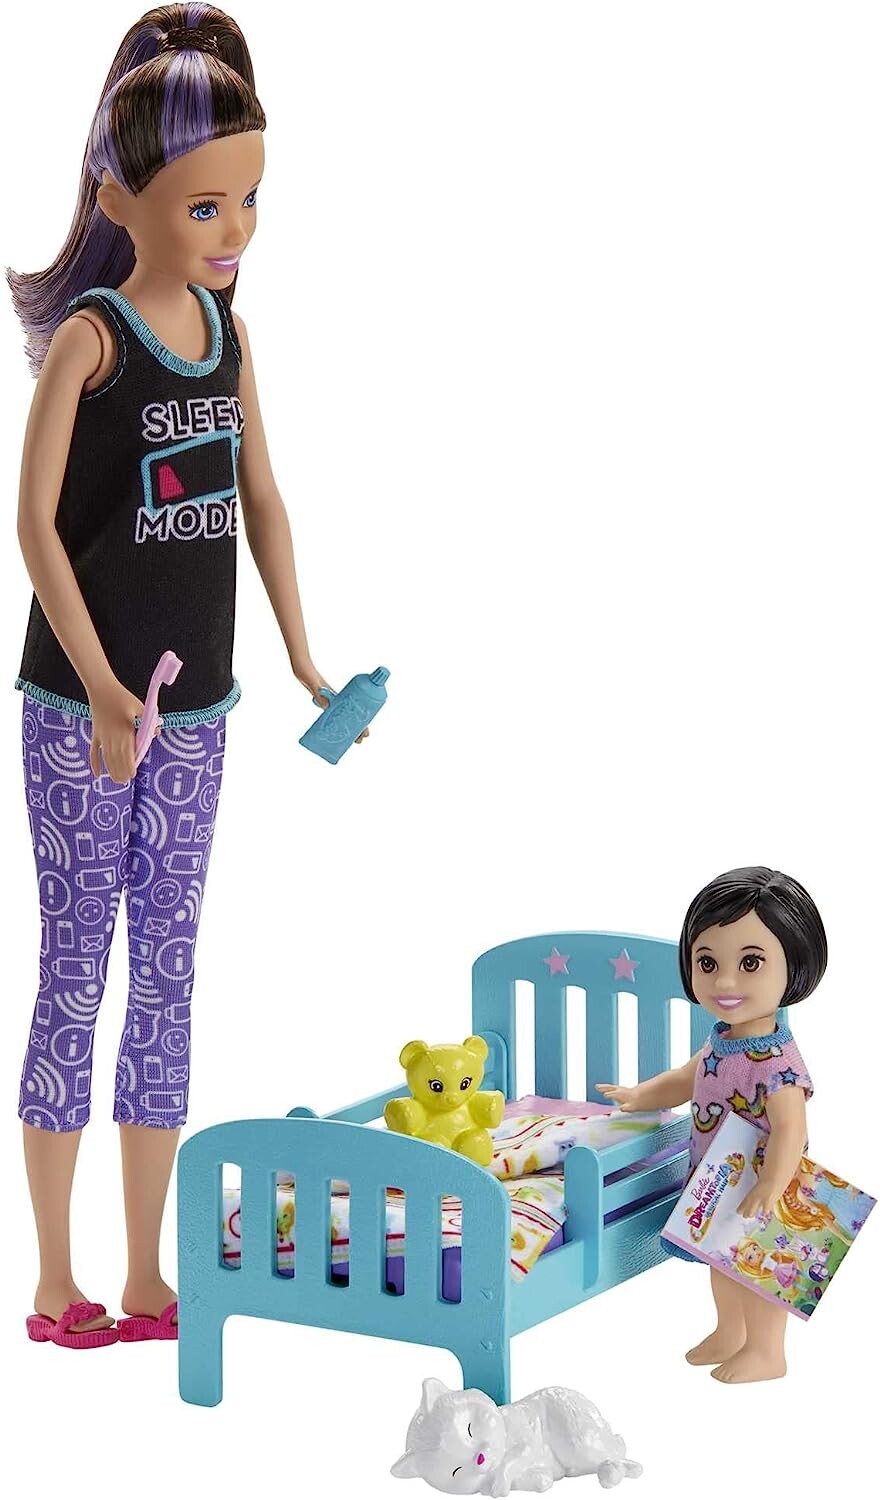 Coffret Barbie Babysitter accessoires